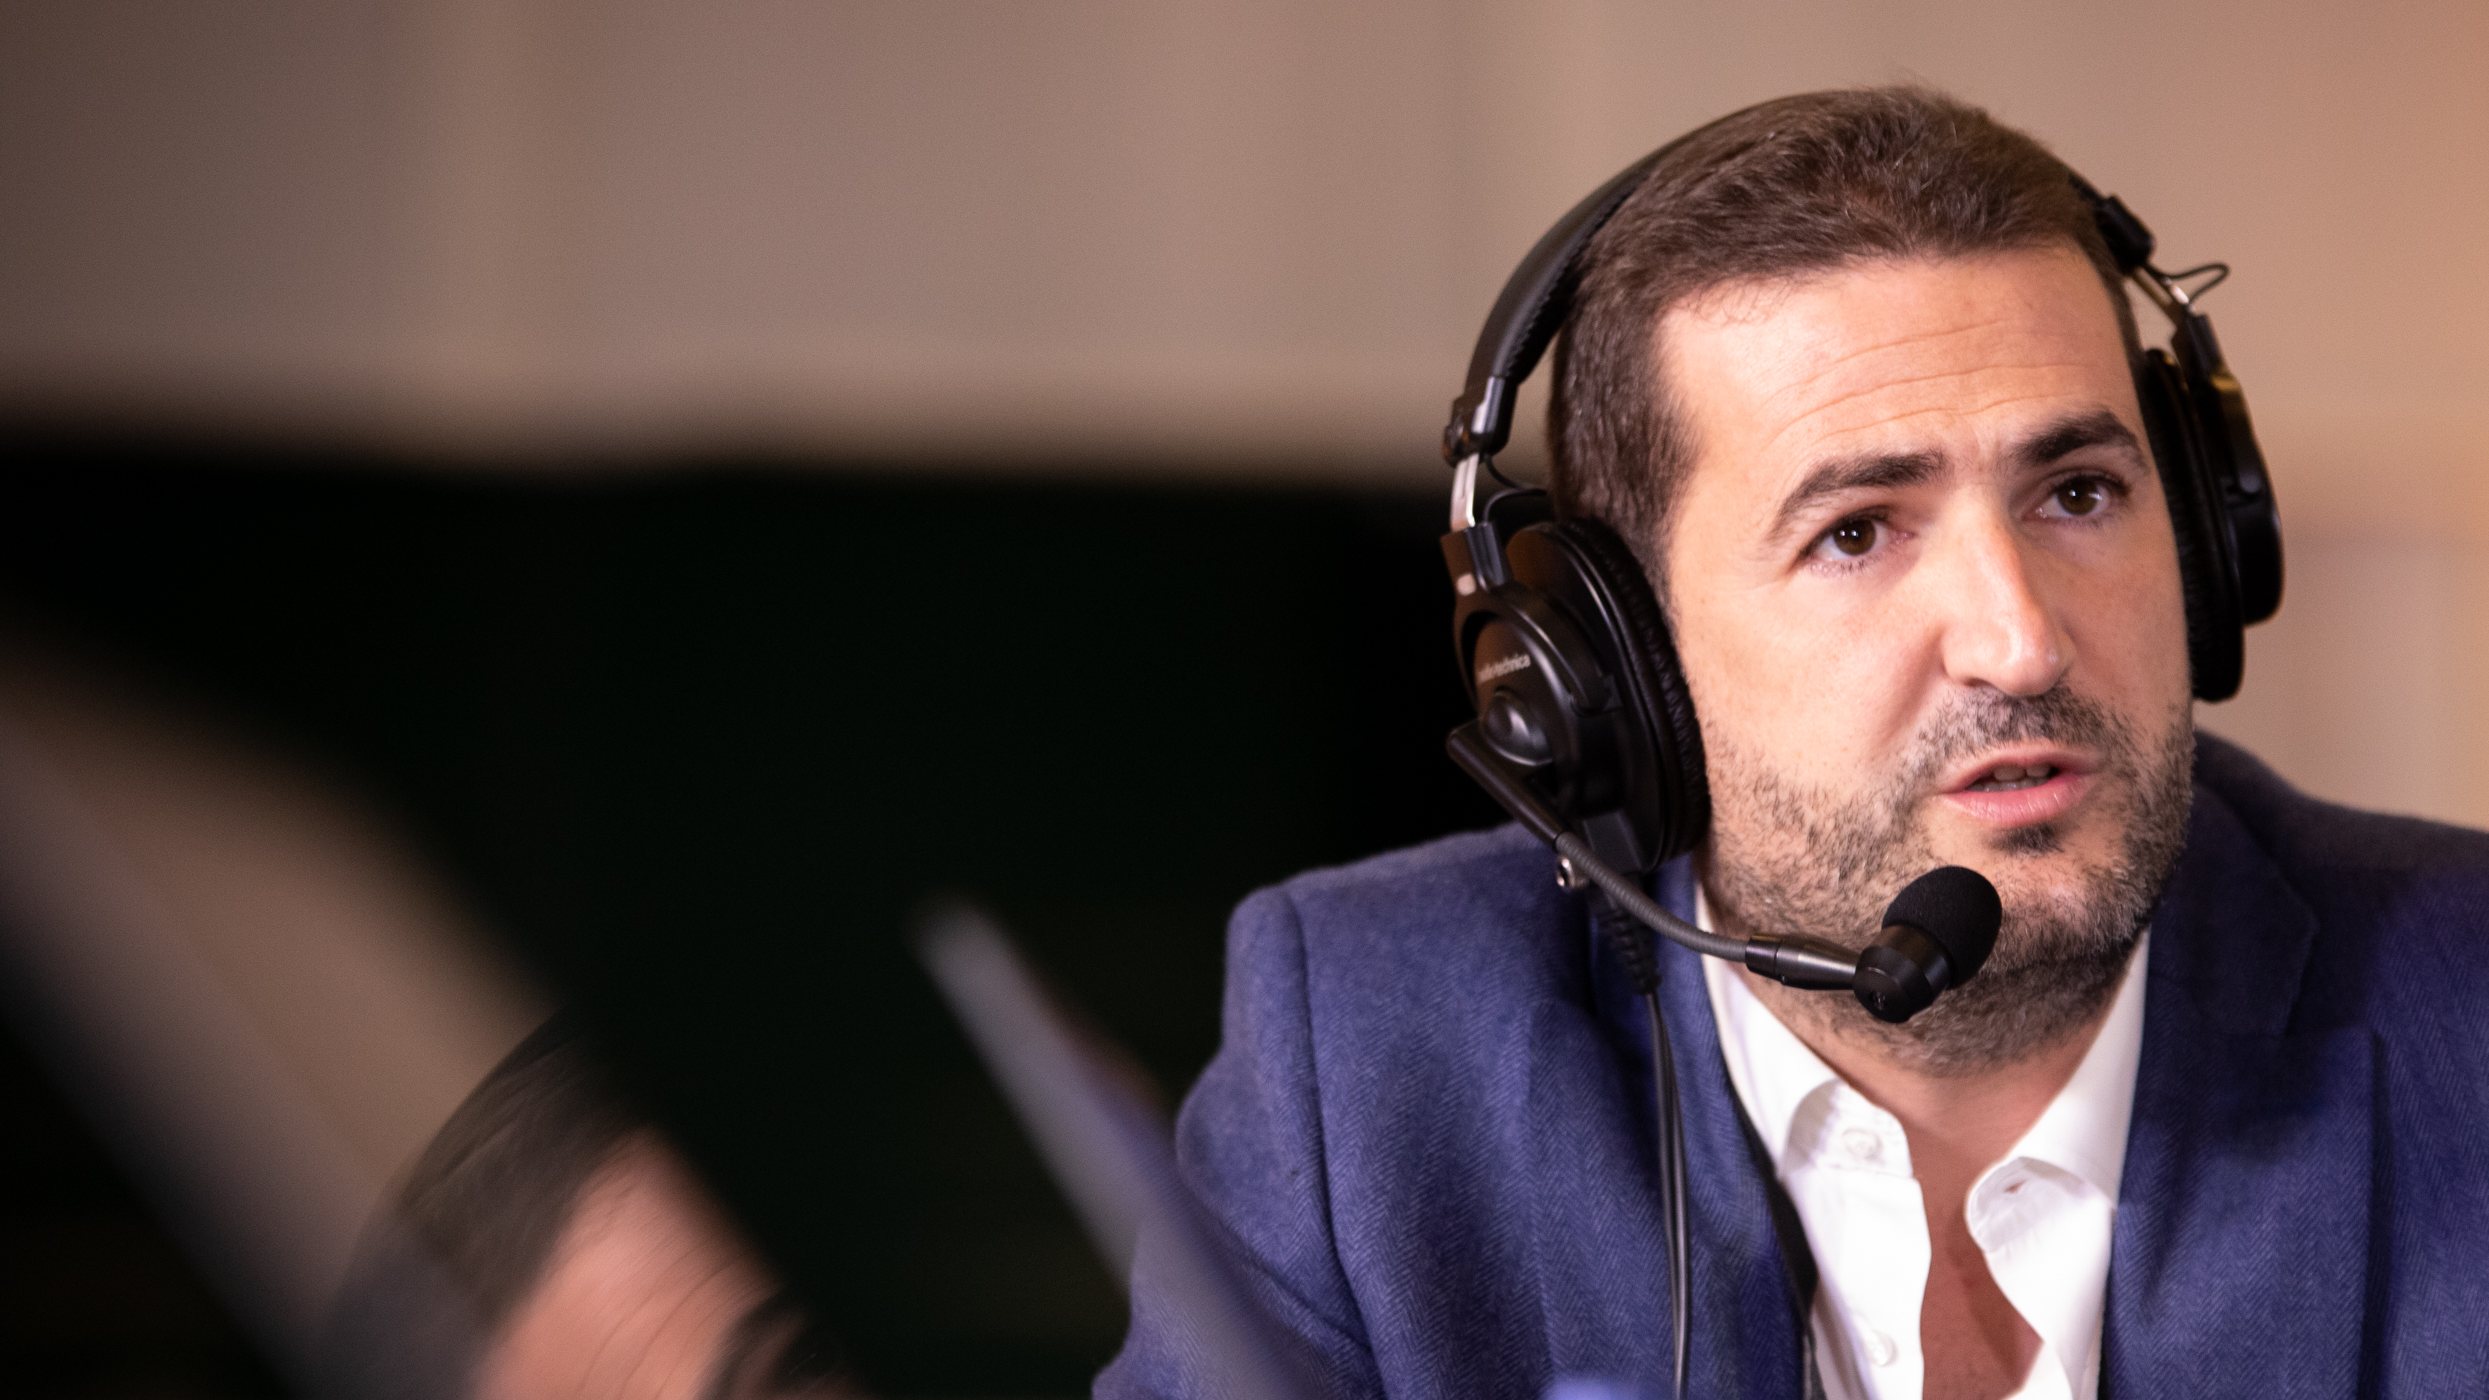 39º Congresso PSD (Partido Social Democrata) - Entrevista para rádio Observador a Hugo Soares. Santa Maria da Feira, Aveiro 18 de Dezembro de 2021 TOMÁS SILVA/OBSERVADOR